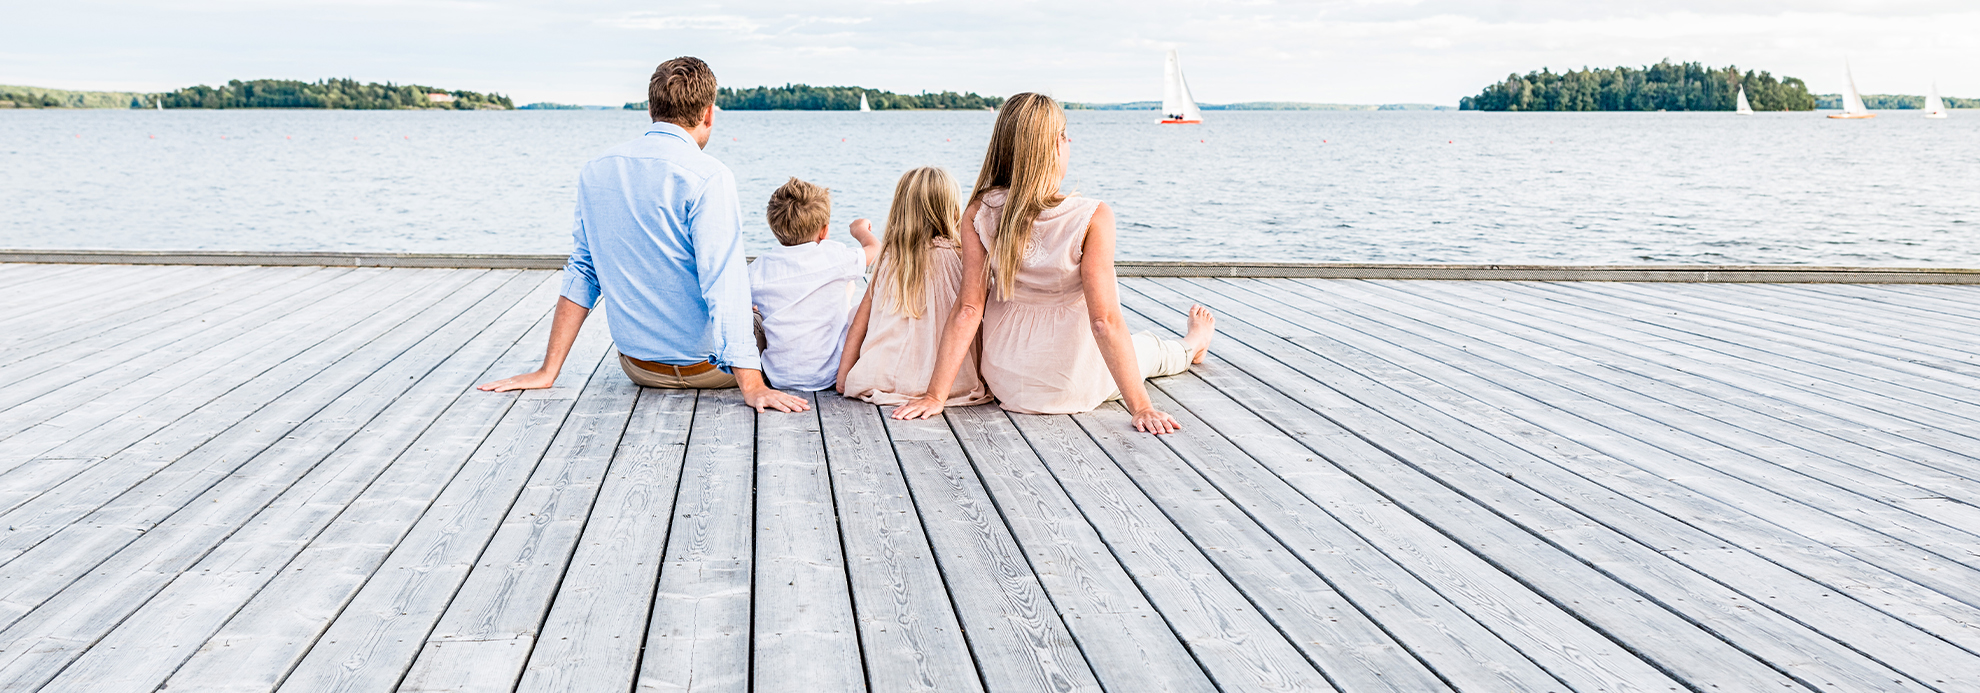 Perhe istuu laiturilla ja katselee merelle